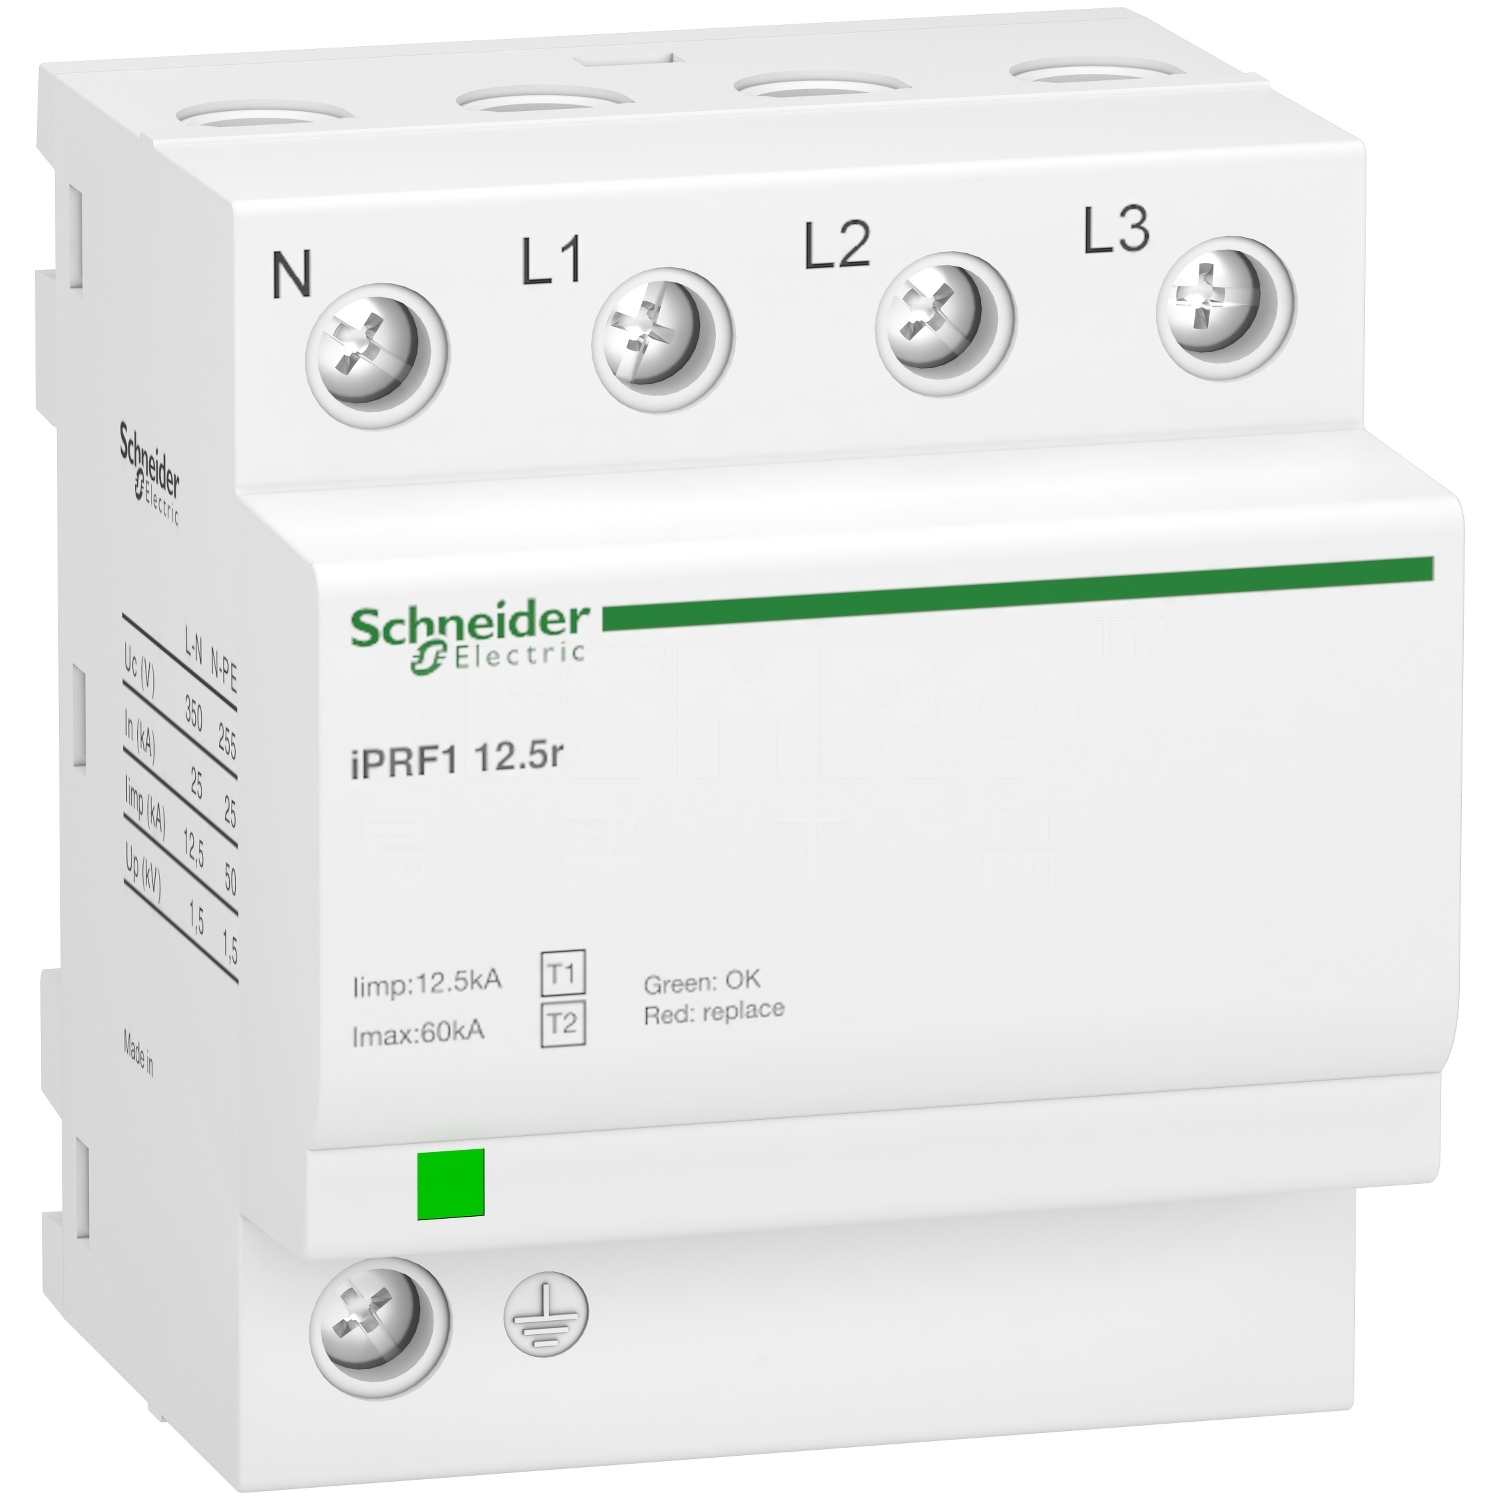 施耐德 Schneider iPRF1系列可插拔式电涌保护器